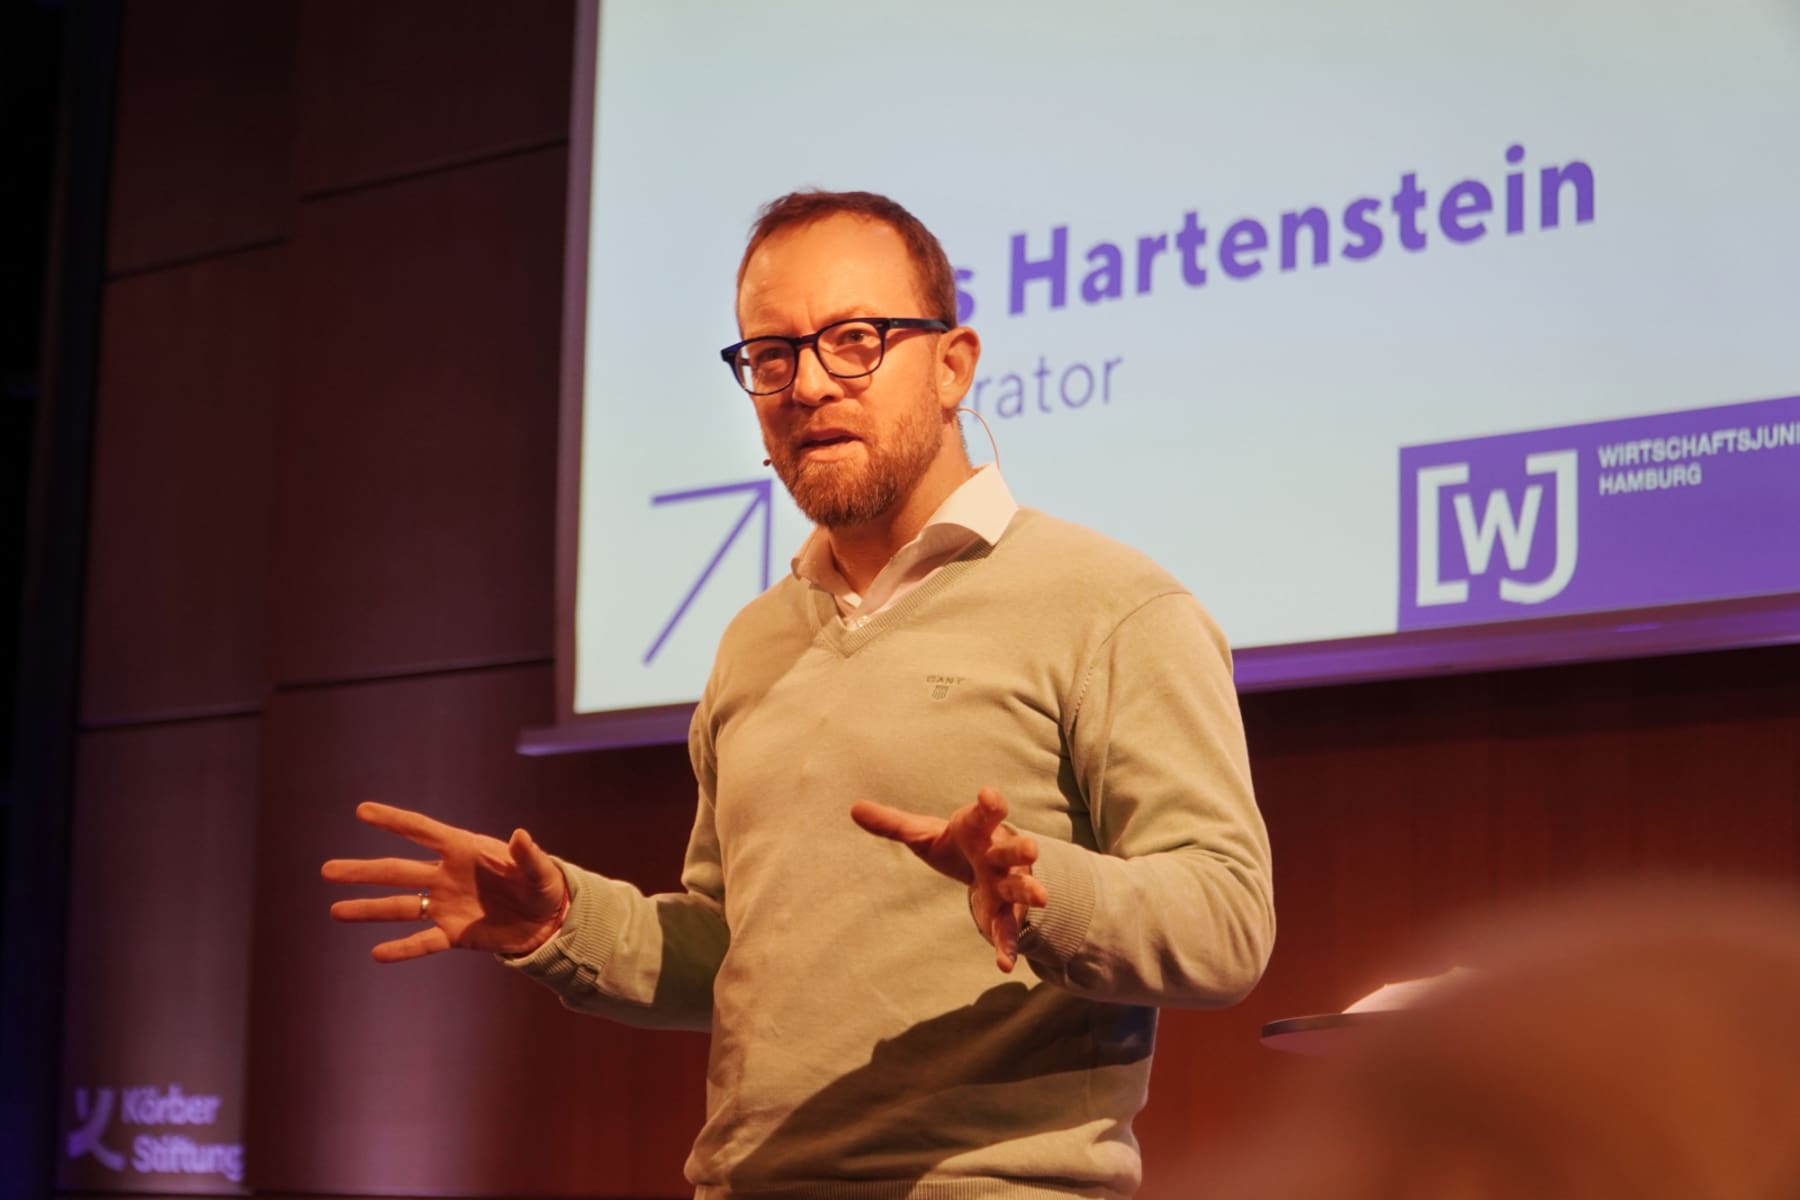 Lars Hartenstein, Pitch-Experte